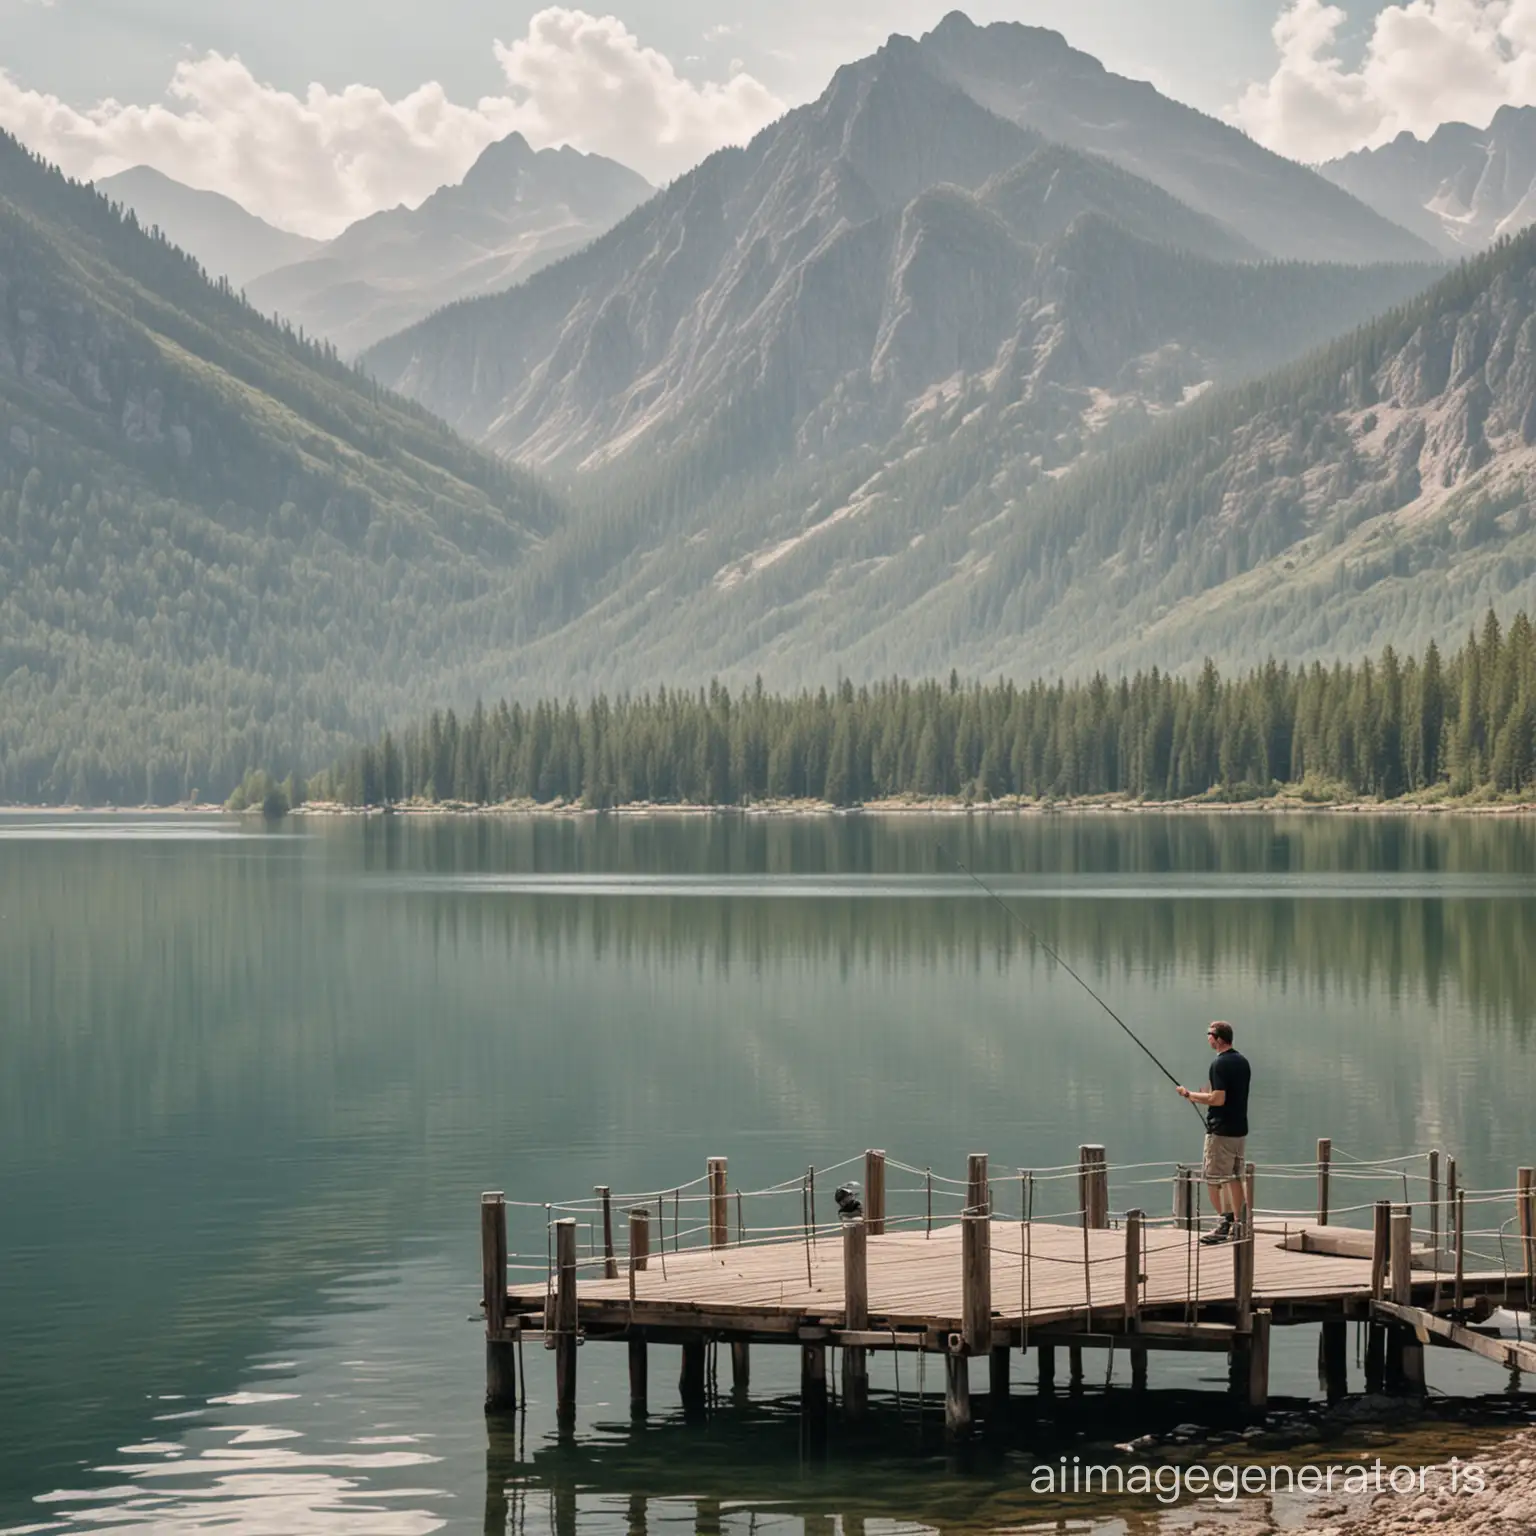 man fishing from dock, lake, mountain background